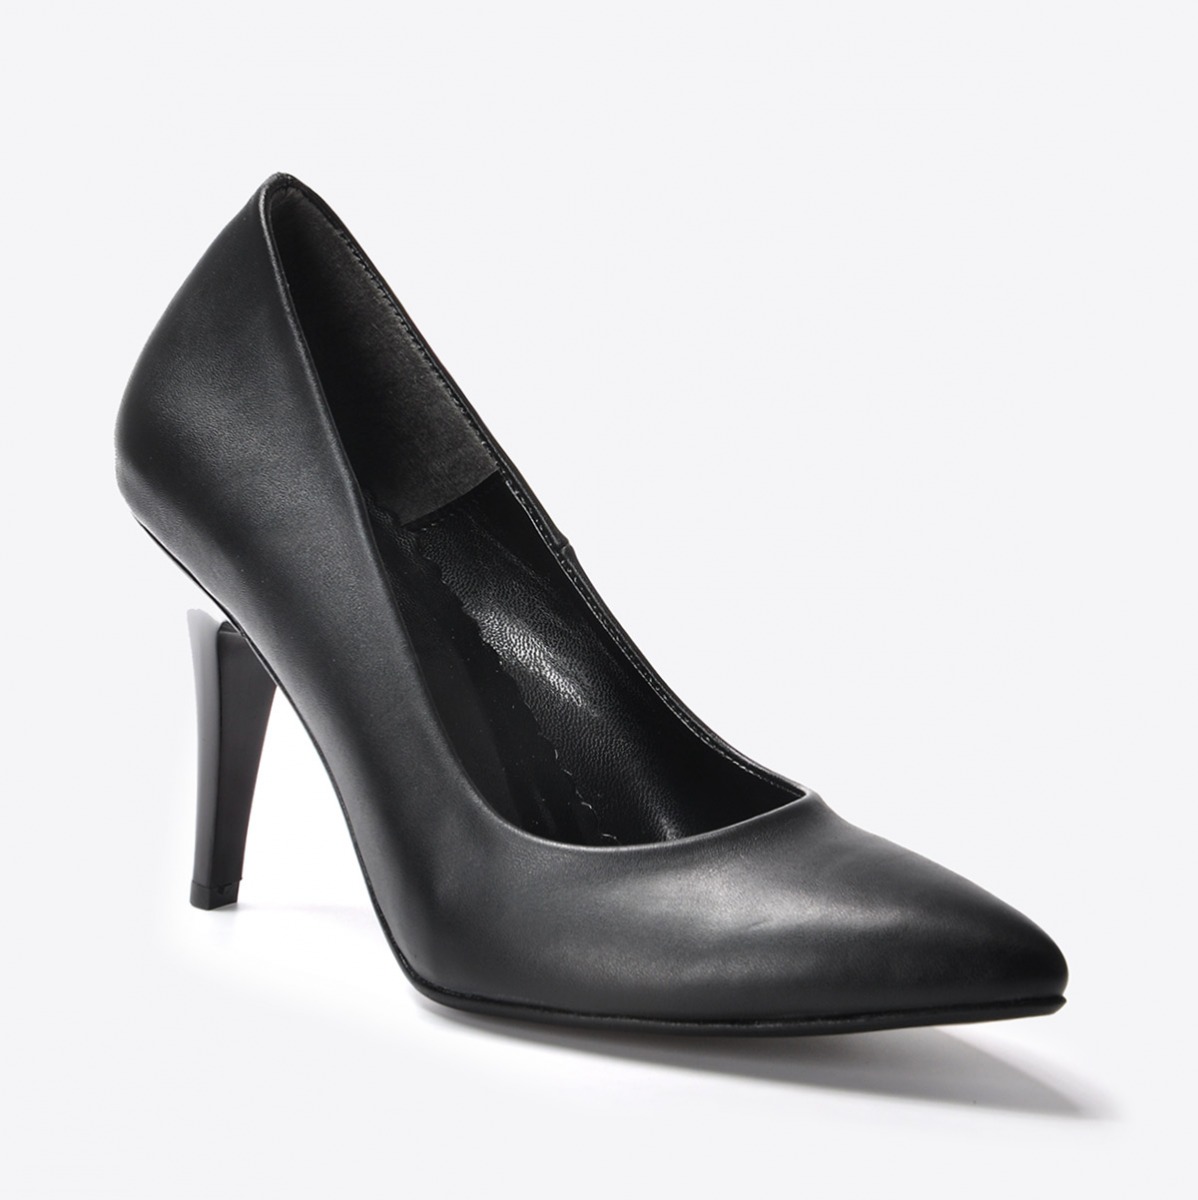 Flo Kadın Siyah Klasik Topuklu Ayakkabı VZN20-170Y. 1